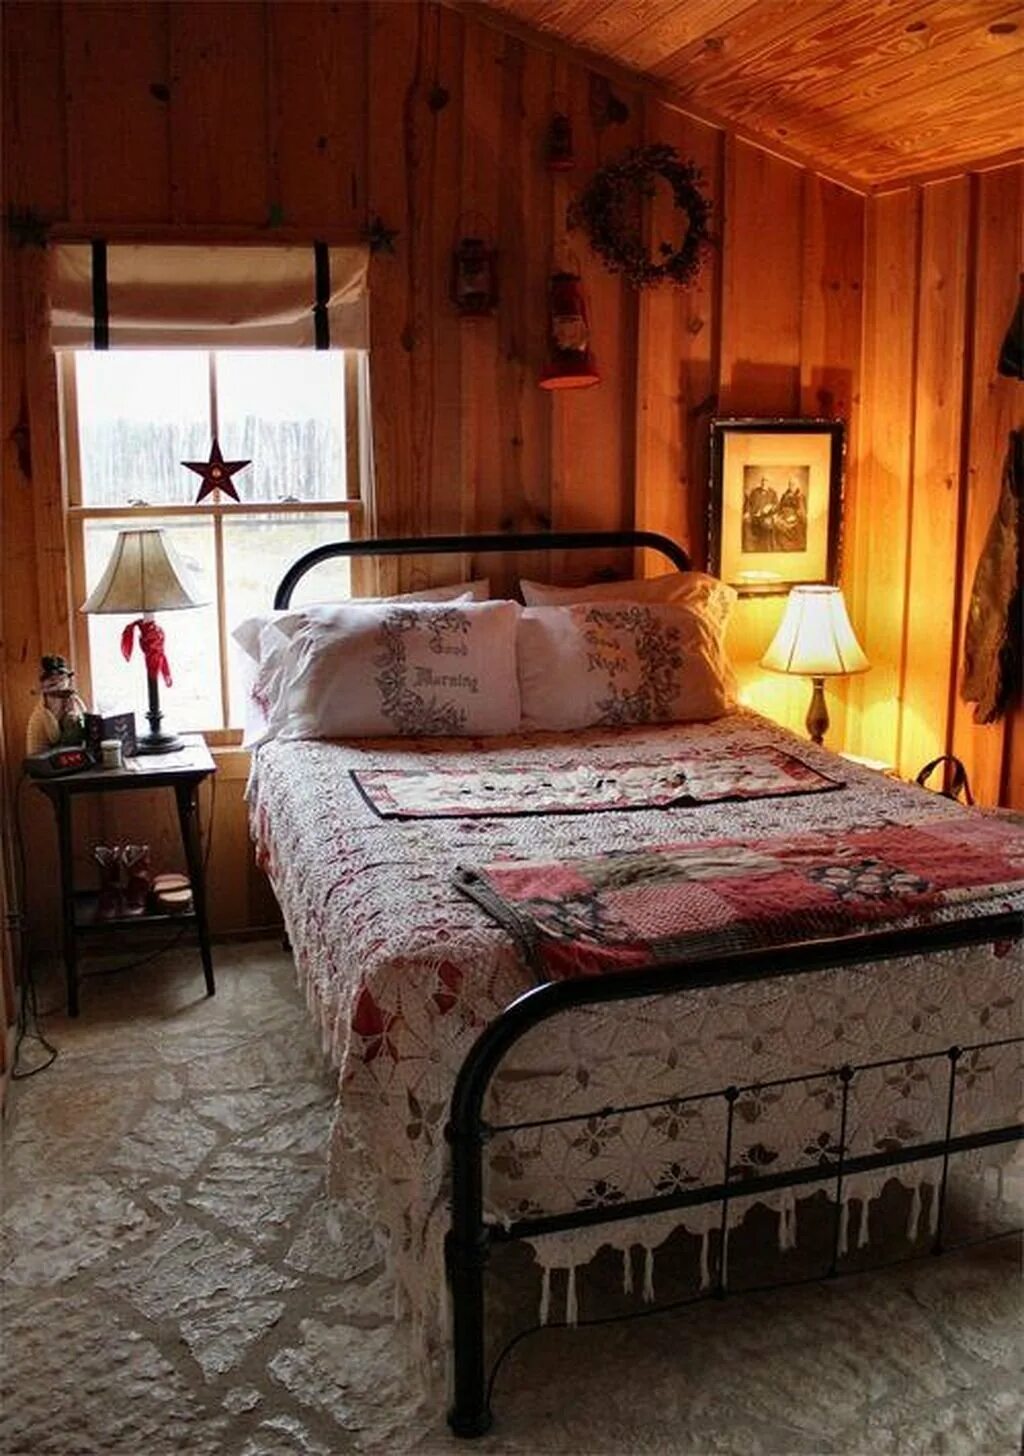 Комната на старой даче. Спальня в деревенском стиле. Уютная спальня в деревенском стиле. Спальня в дачном доме. Дачная комната интерьер.